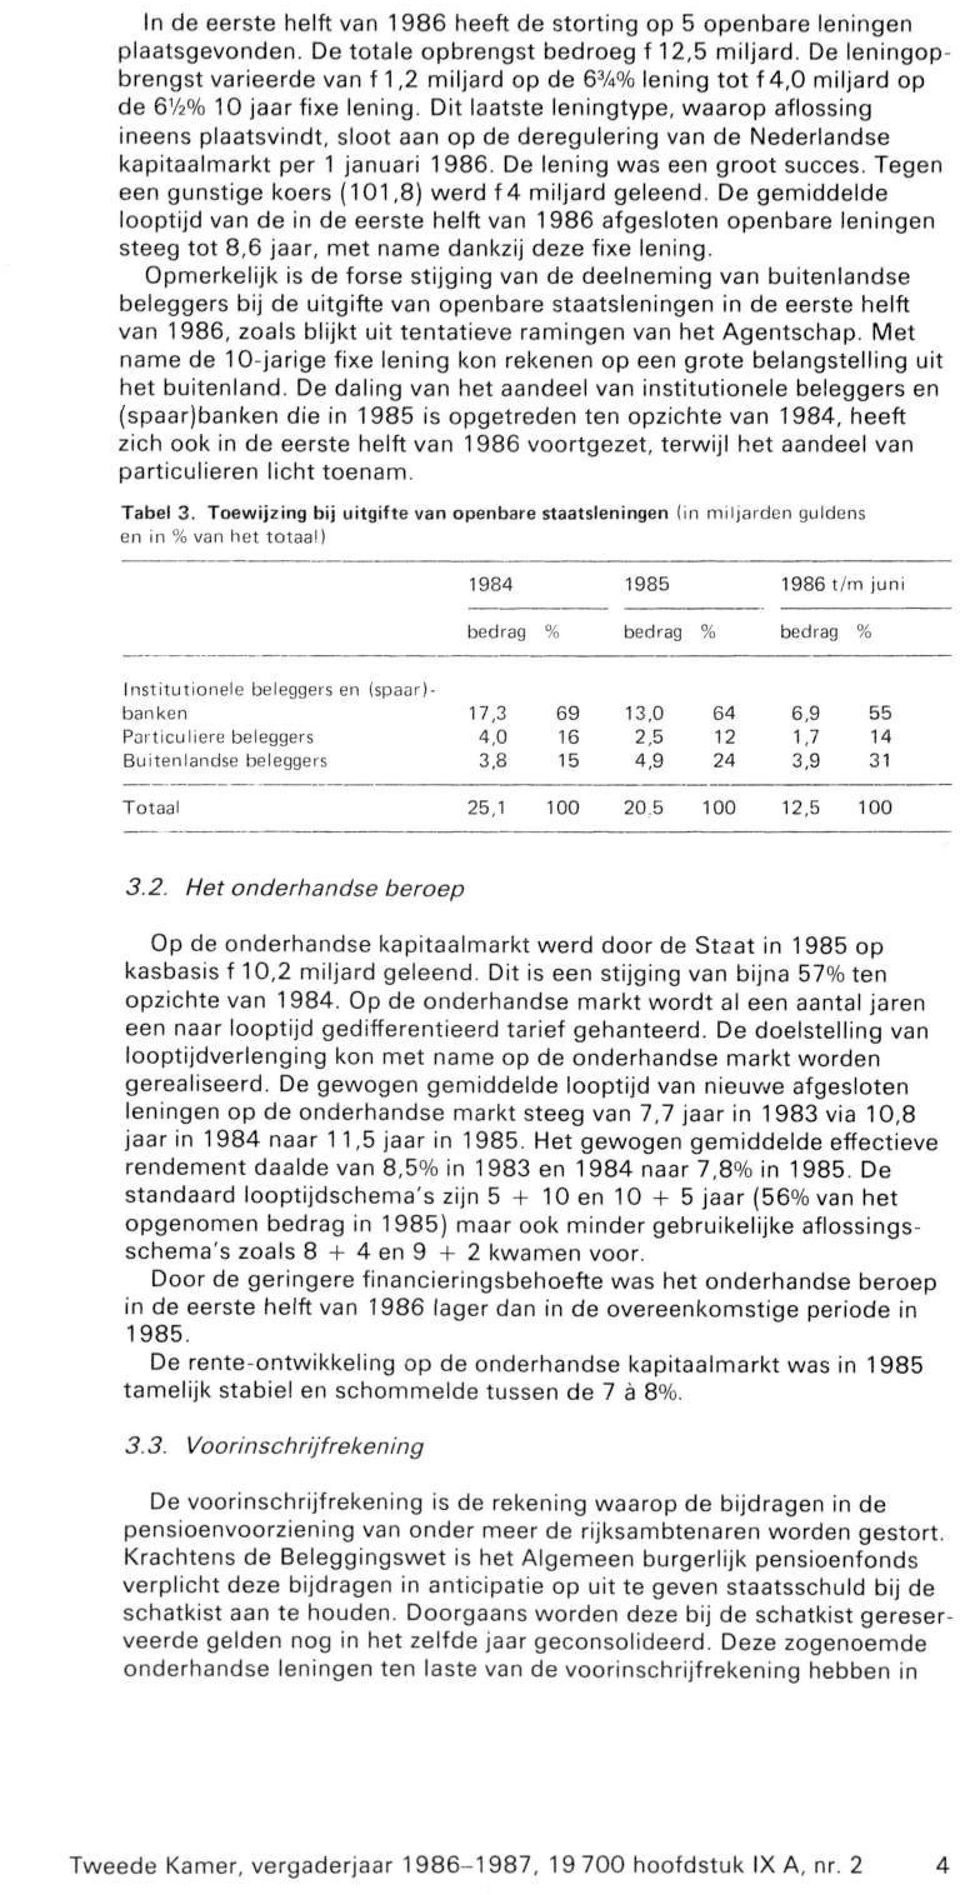 Dit laatste leningtype, waarop aflossing ineens plaatsvindt, sloot aan op de deregulering van de Nederlandse kapitaalmarkt per 1 januari 1986. De lening was een groot succes.